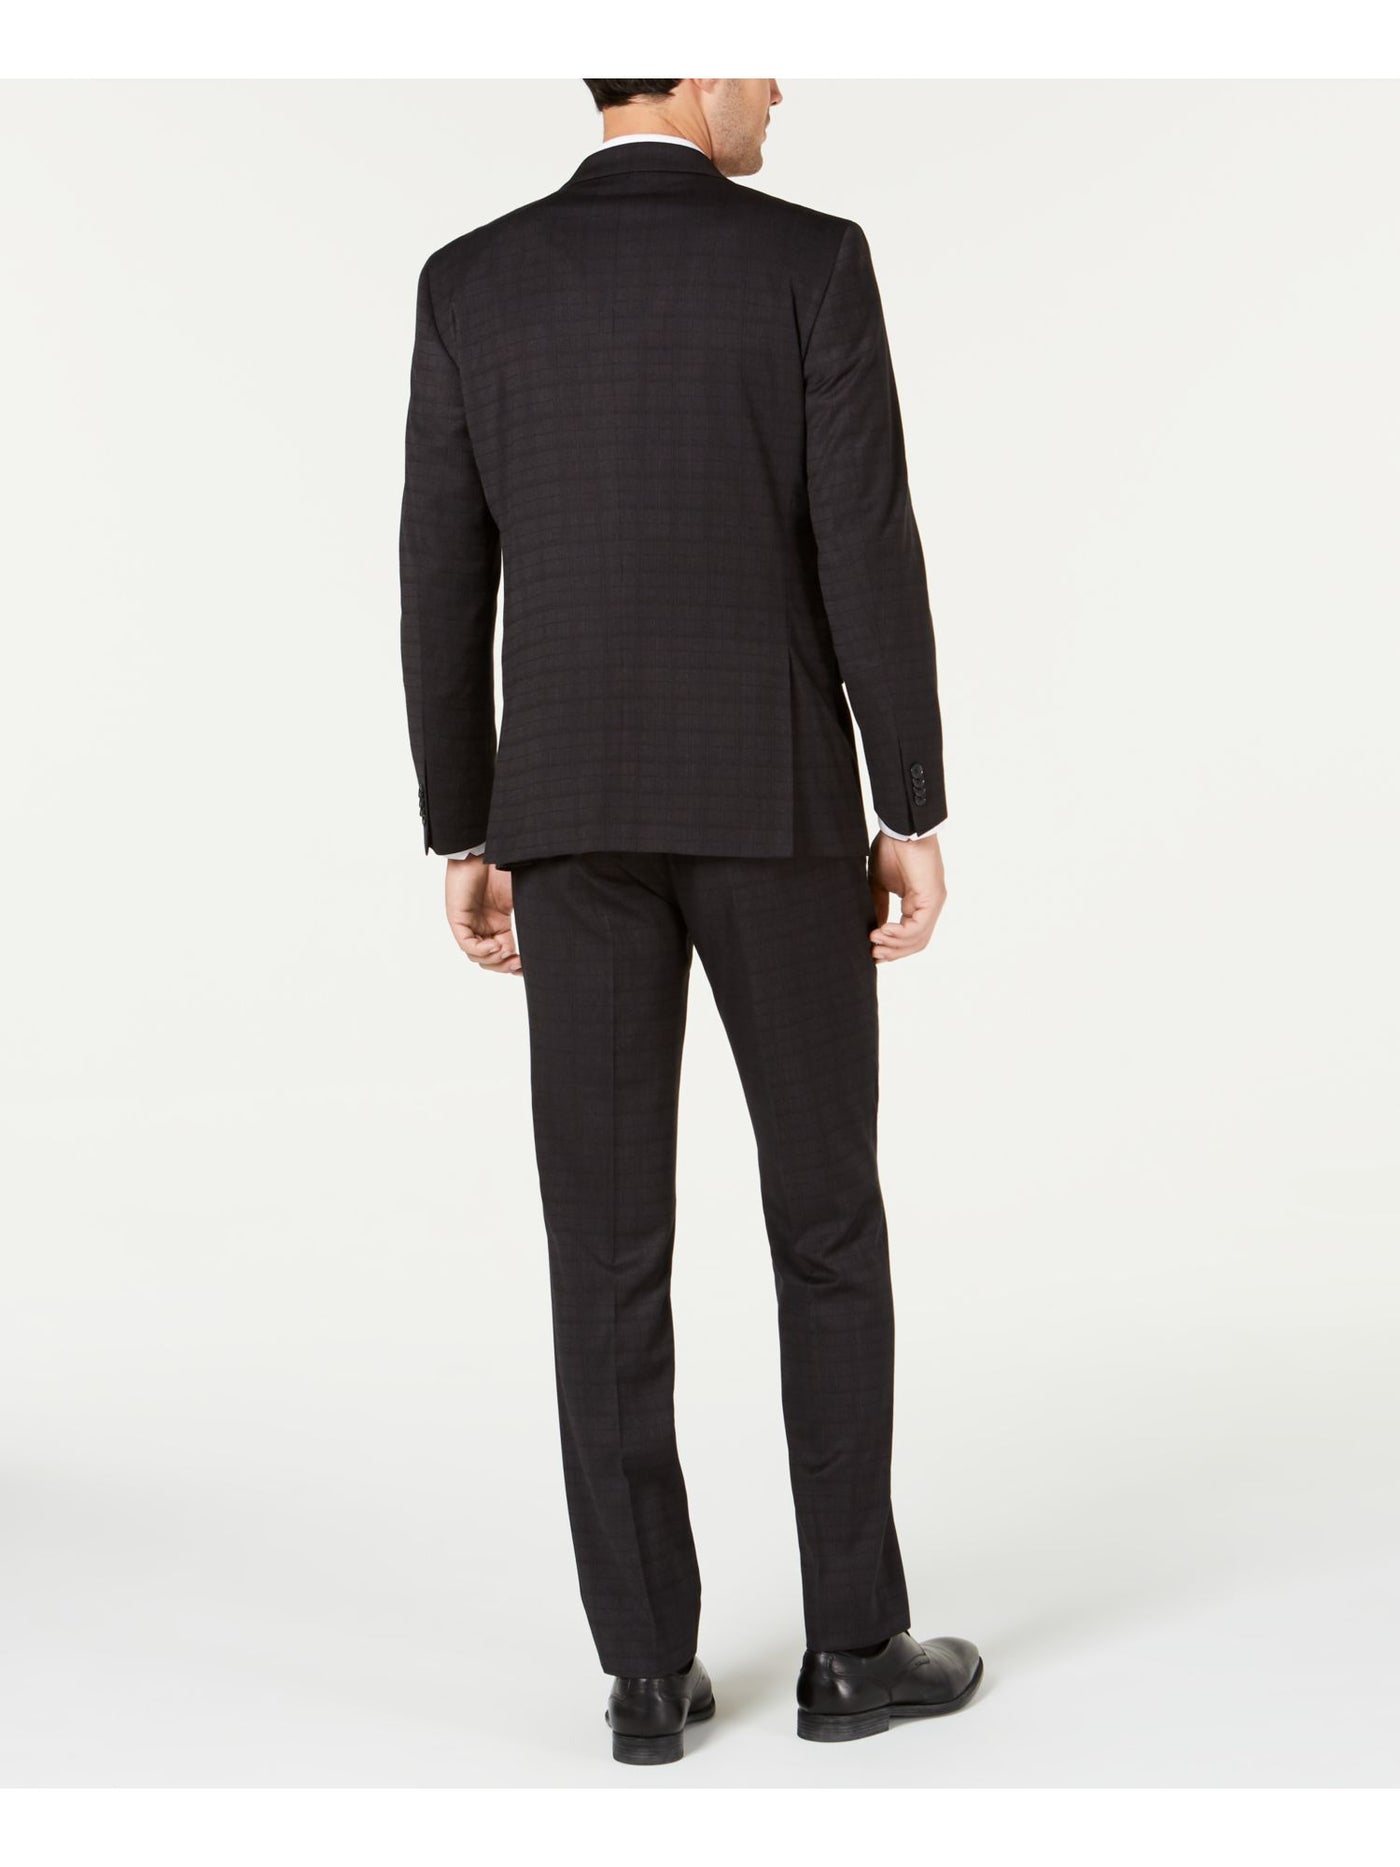 KENNETH COLE Mens Black Slim Fit Suit Separate Blazer Jacket 38 SHORT